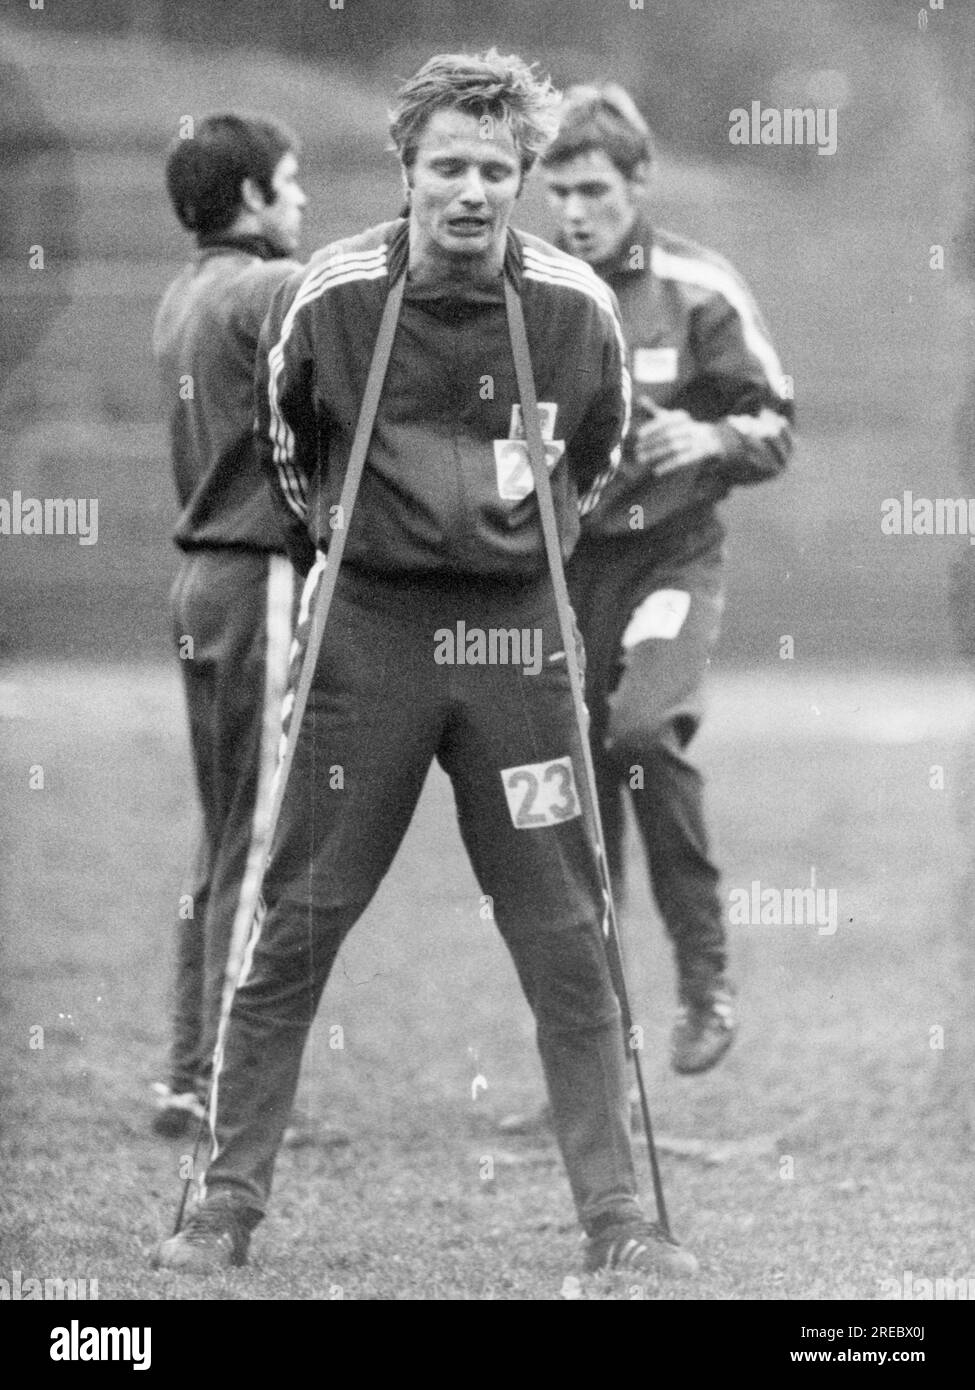 Varga, Zoltan, 1.1.1945 - 9,4.2010, ungarischer Fußballspieler, Mittelstürmer von Hertha BSC, Training, ADDITIONAL-RIGHTS-CLEARANCE-INFO-NOT-AVAILABLE Stockfoto